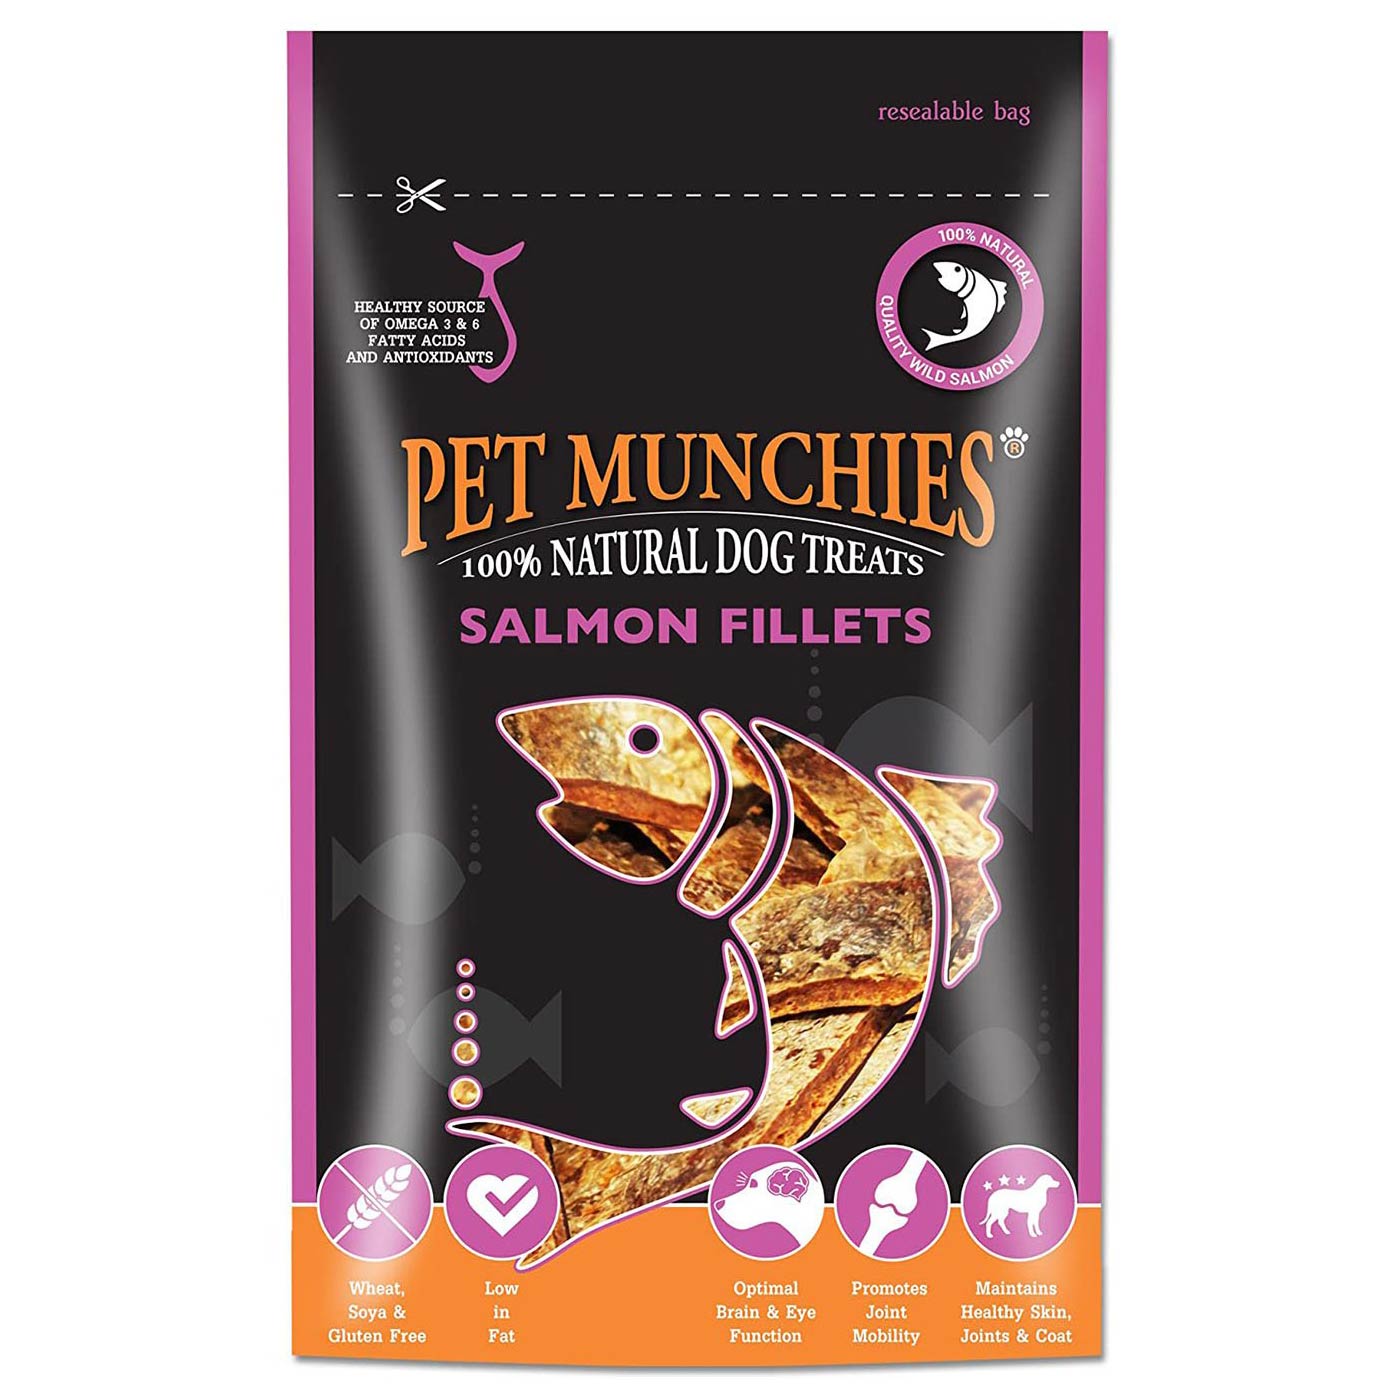 Pet Munchies Salmon Fillets